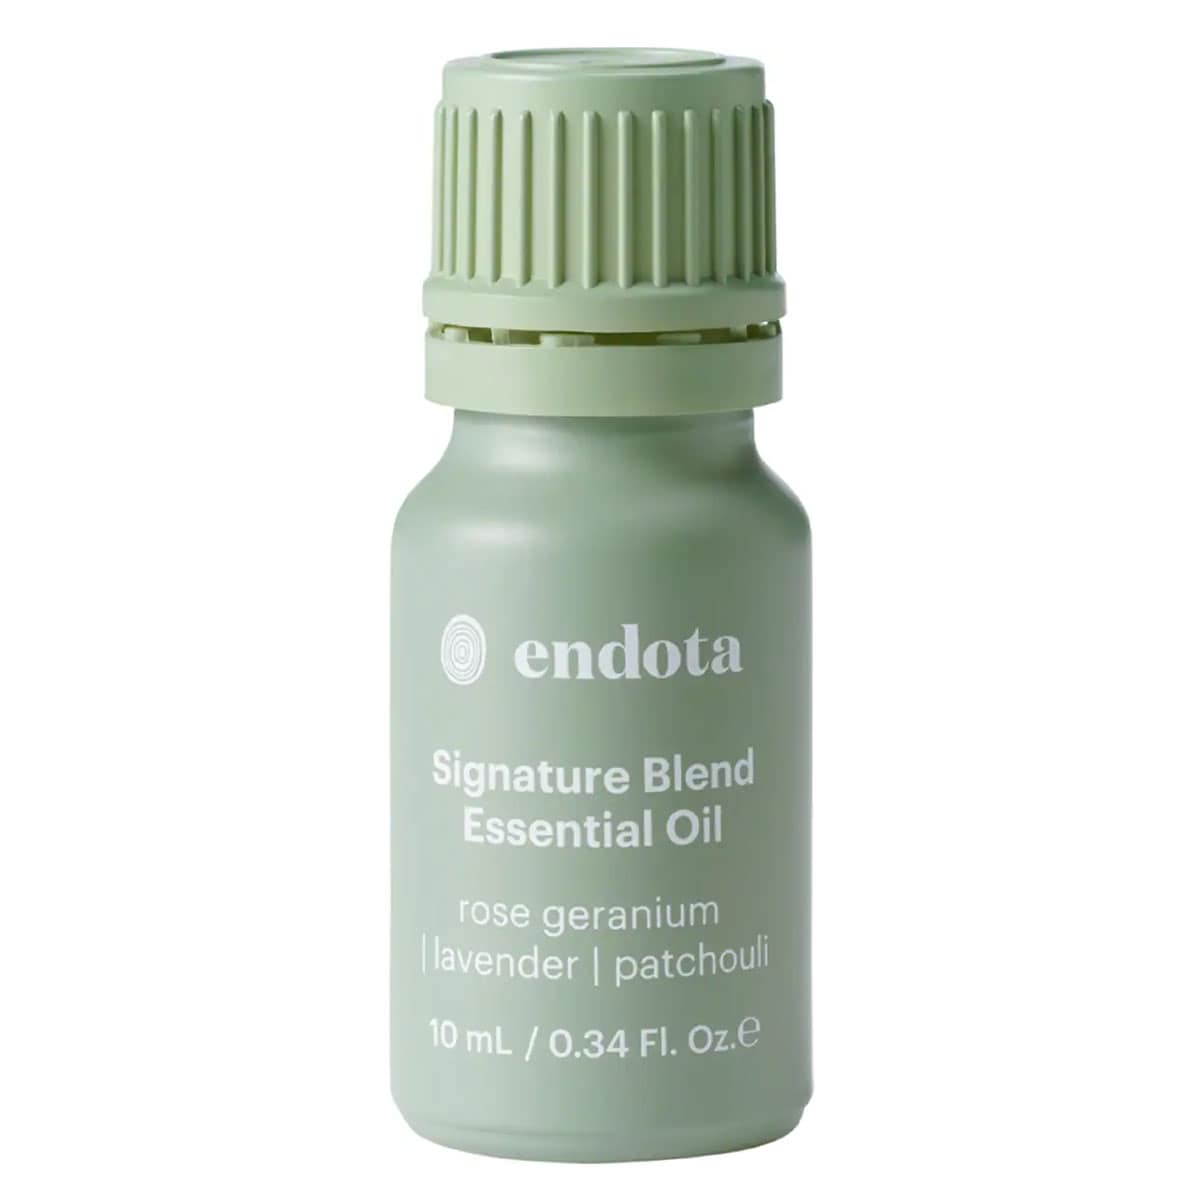 Endota Signature Blend Essential Oil 10ml